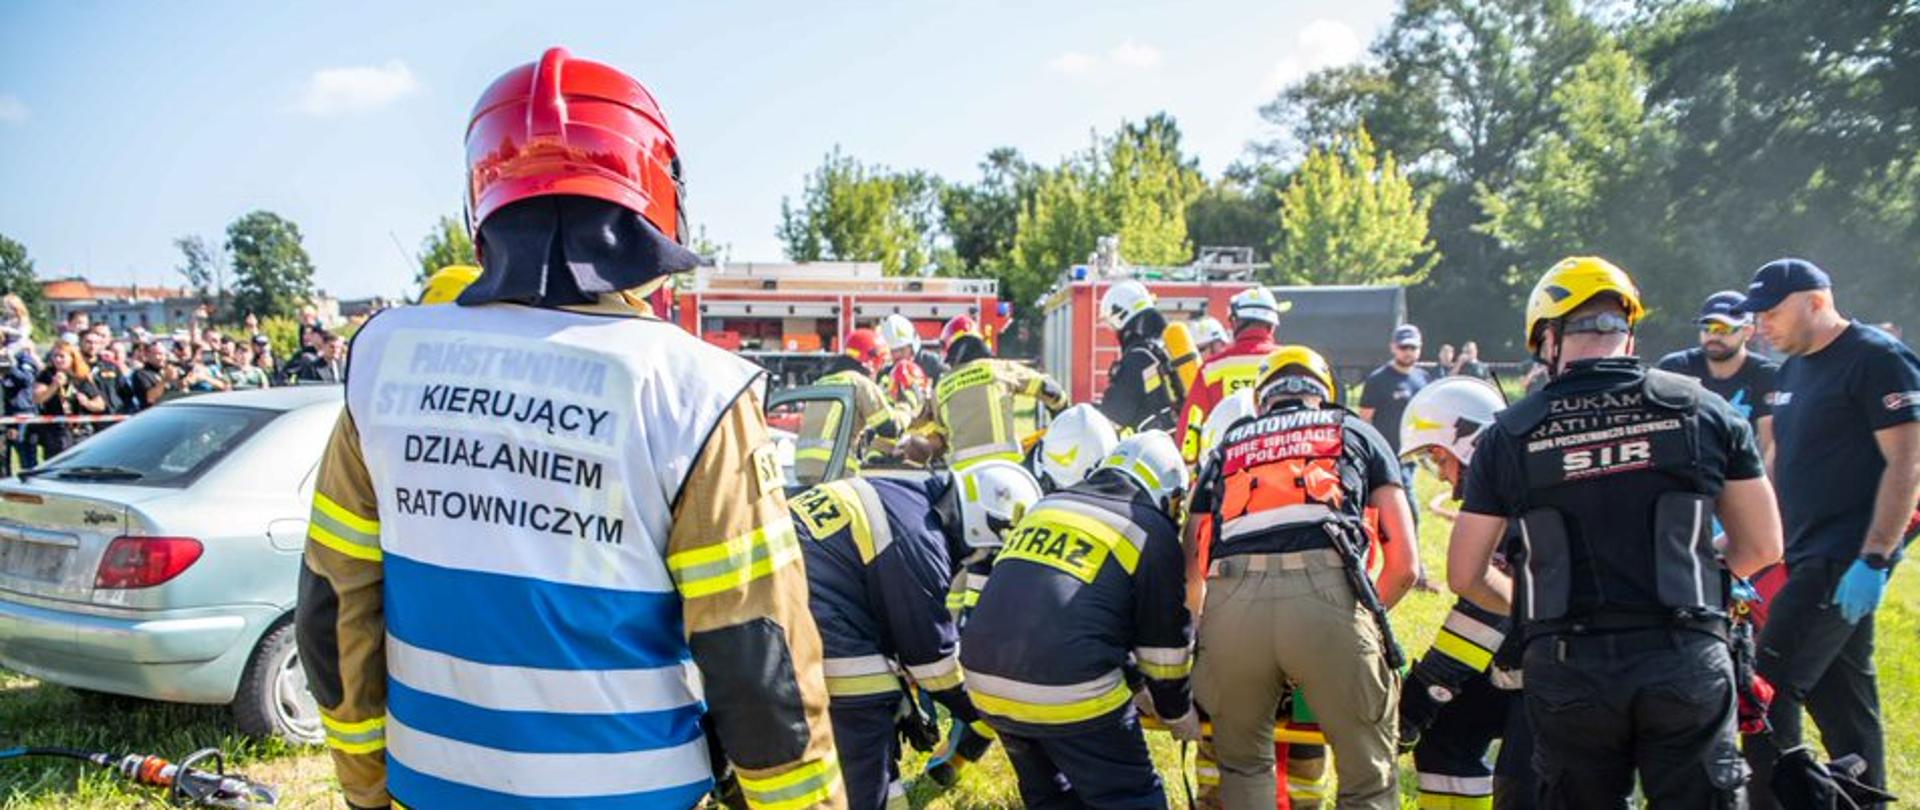 strażacy i inne służby przenoszą na desce ortopedycznej osobę poszkodowaną, przd nimi stoi strażak w hełmie i kamizelce z napisem kierujący działaniem ratowniczym, w tle pojazdy pożarnicze